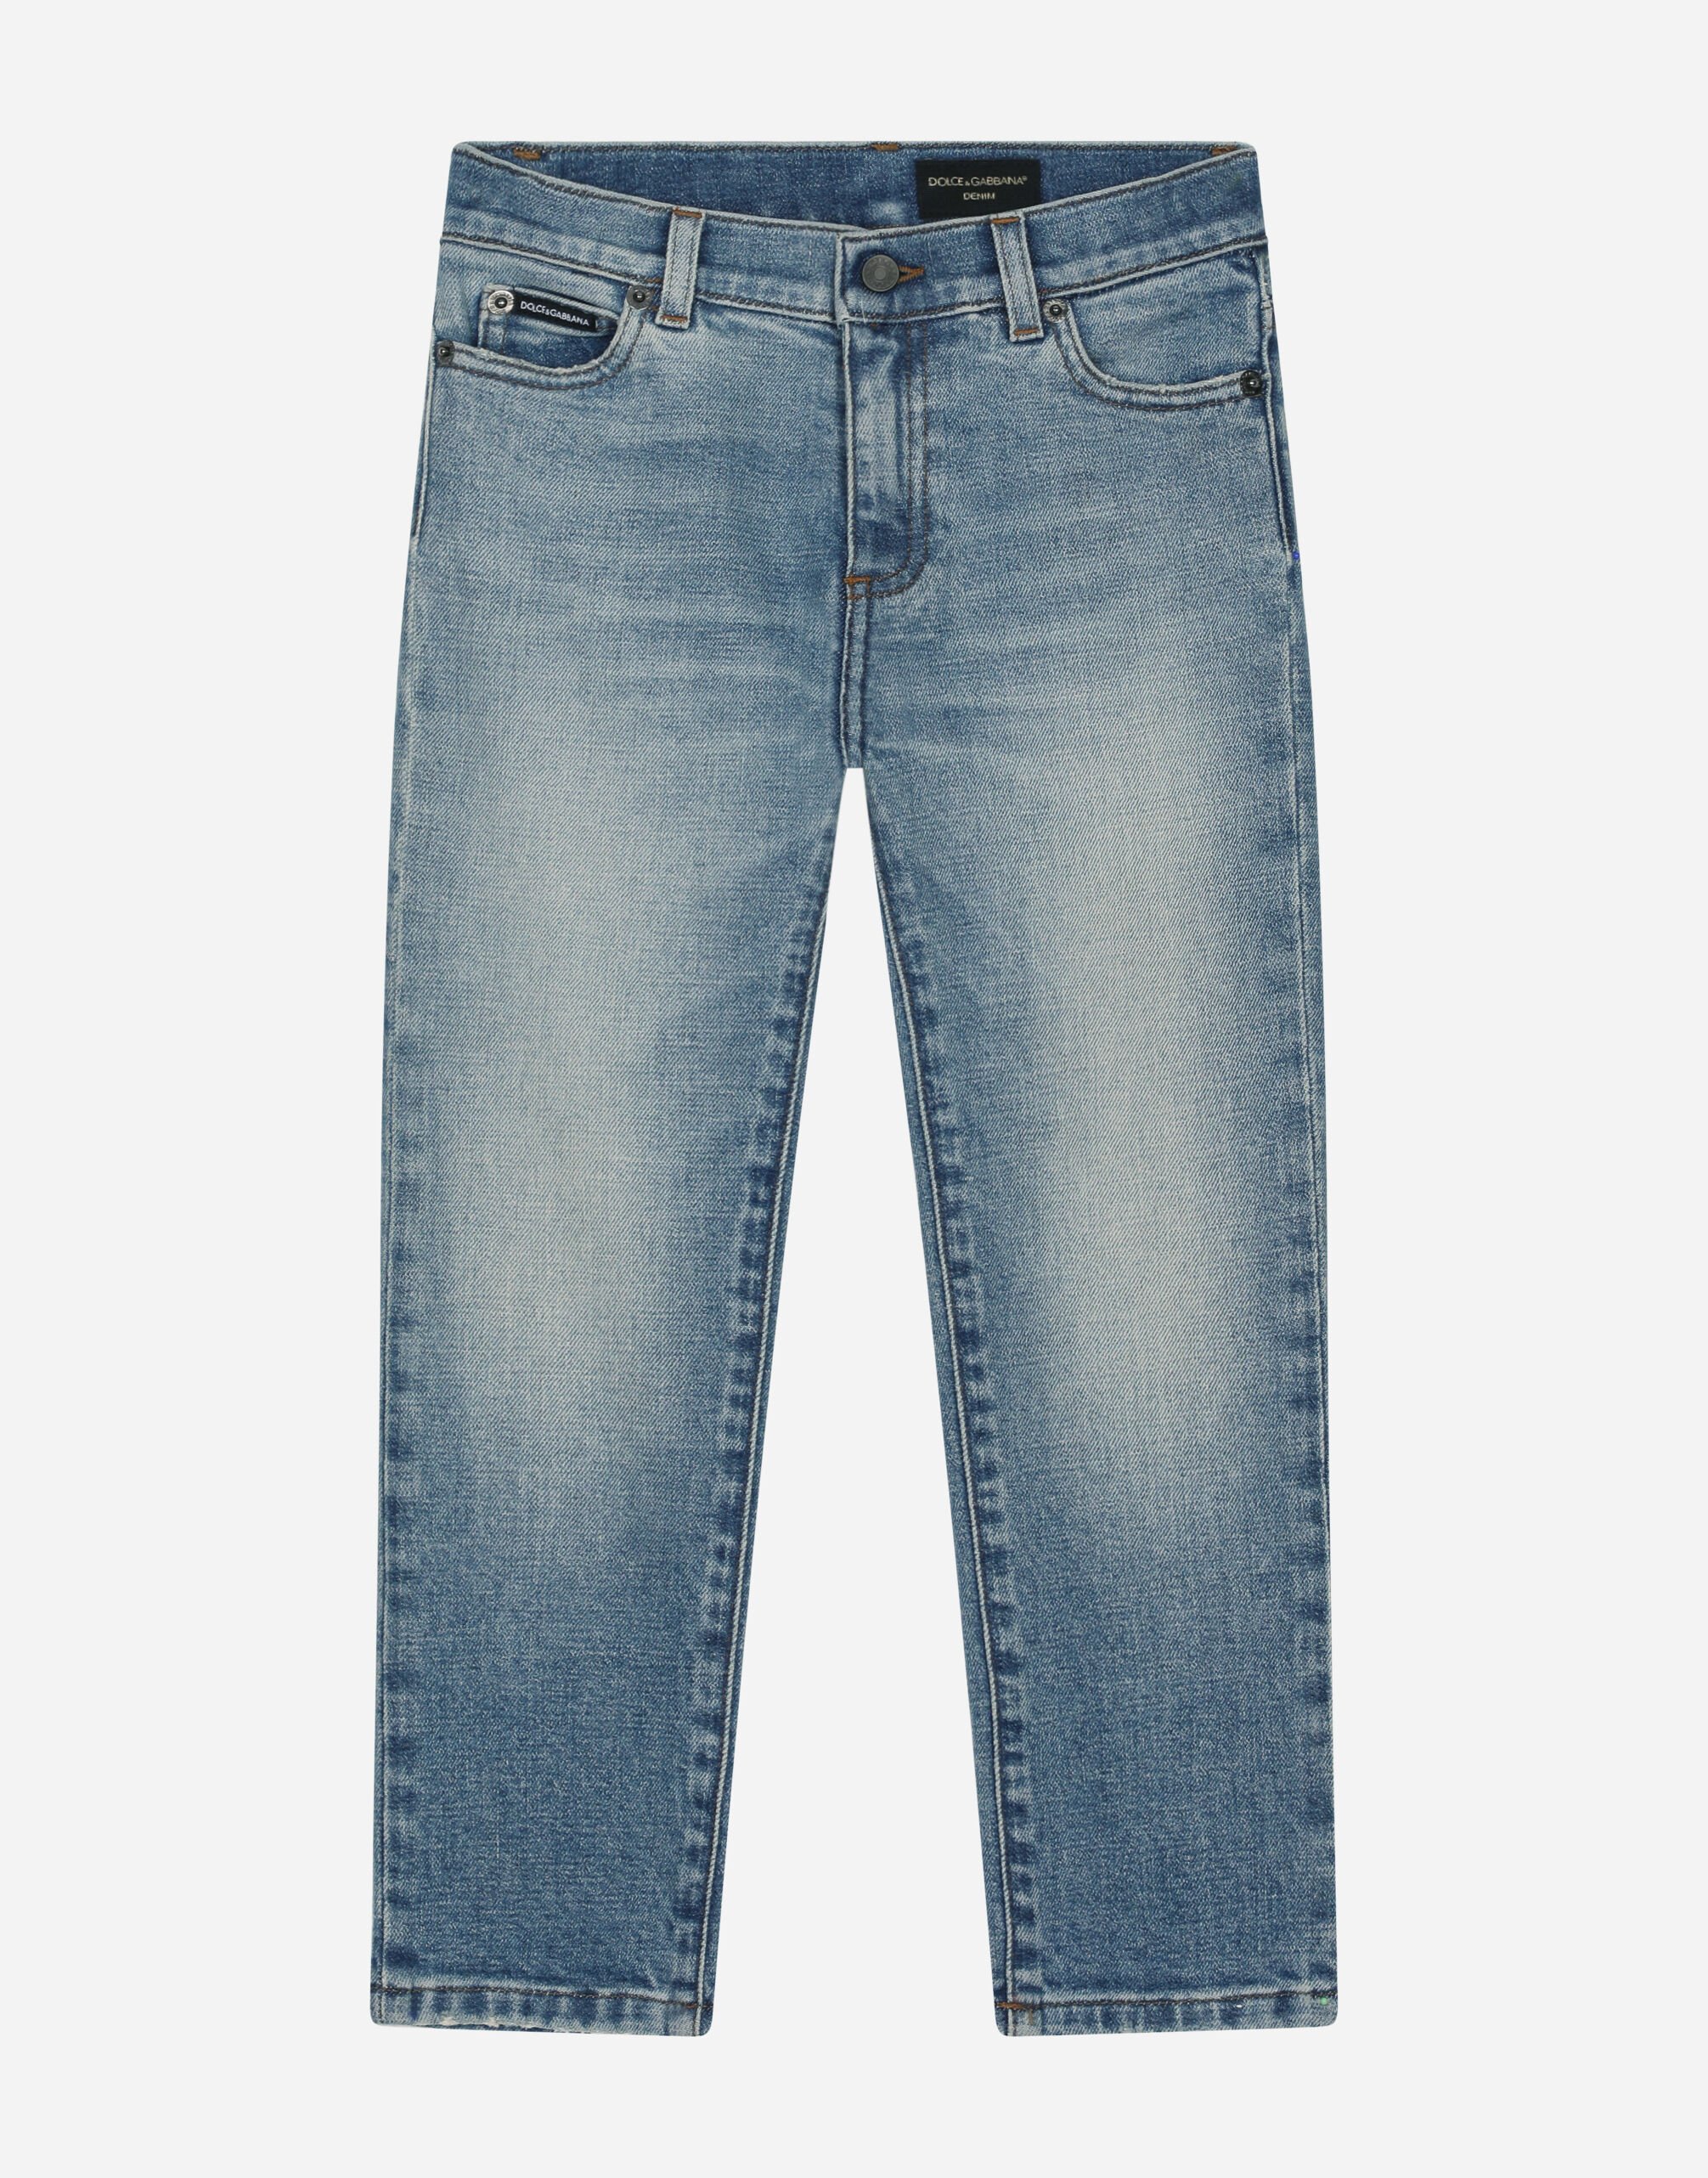 Dolce&Gabbana 5-pocket treated stretch denim jeans with logo print White L5JTKTG7J7W